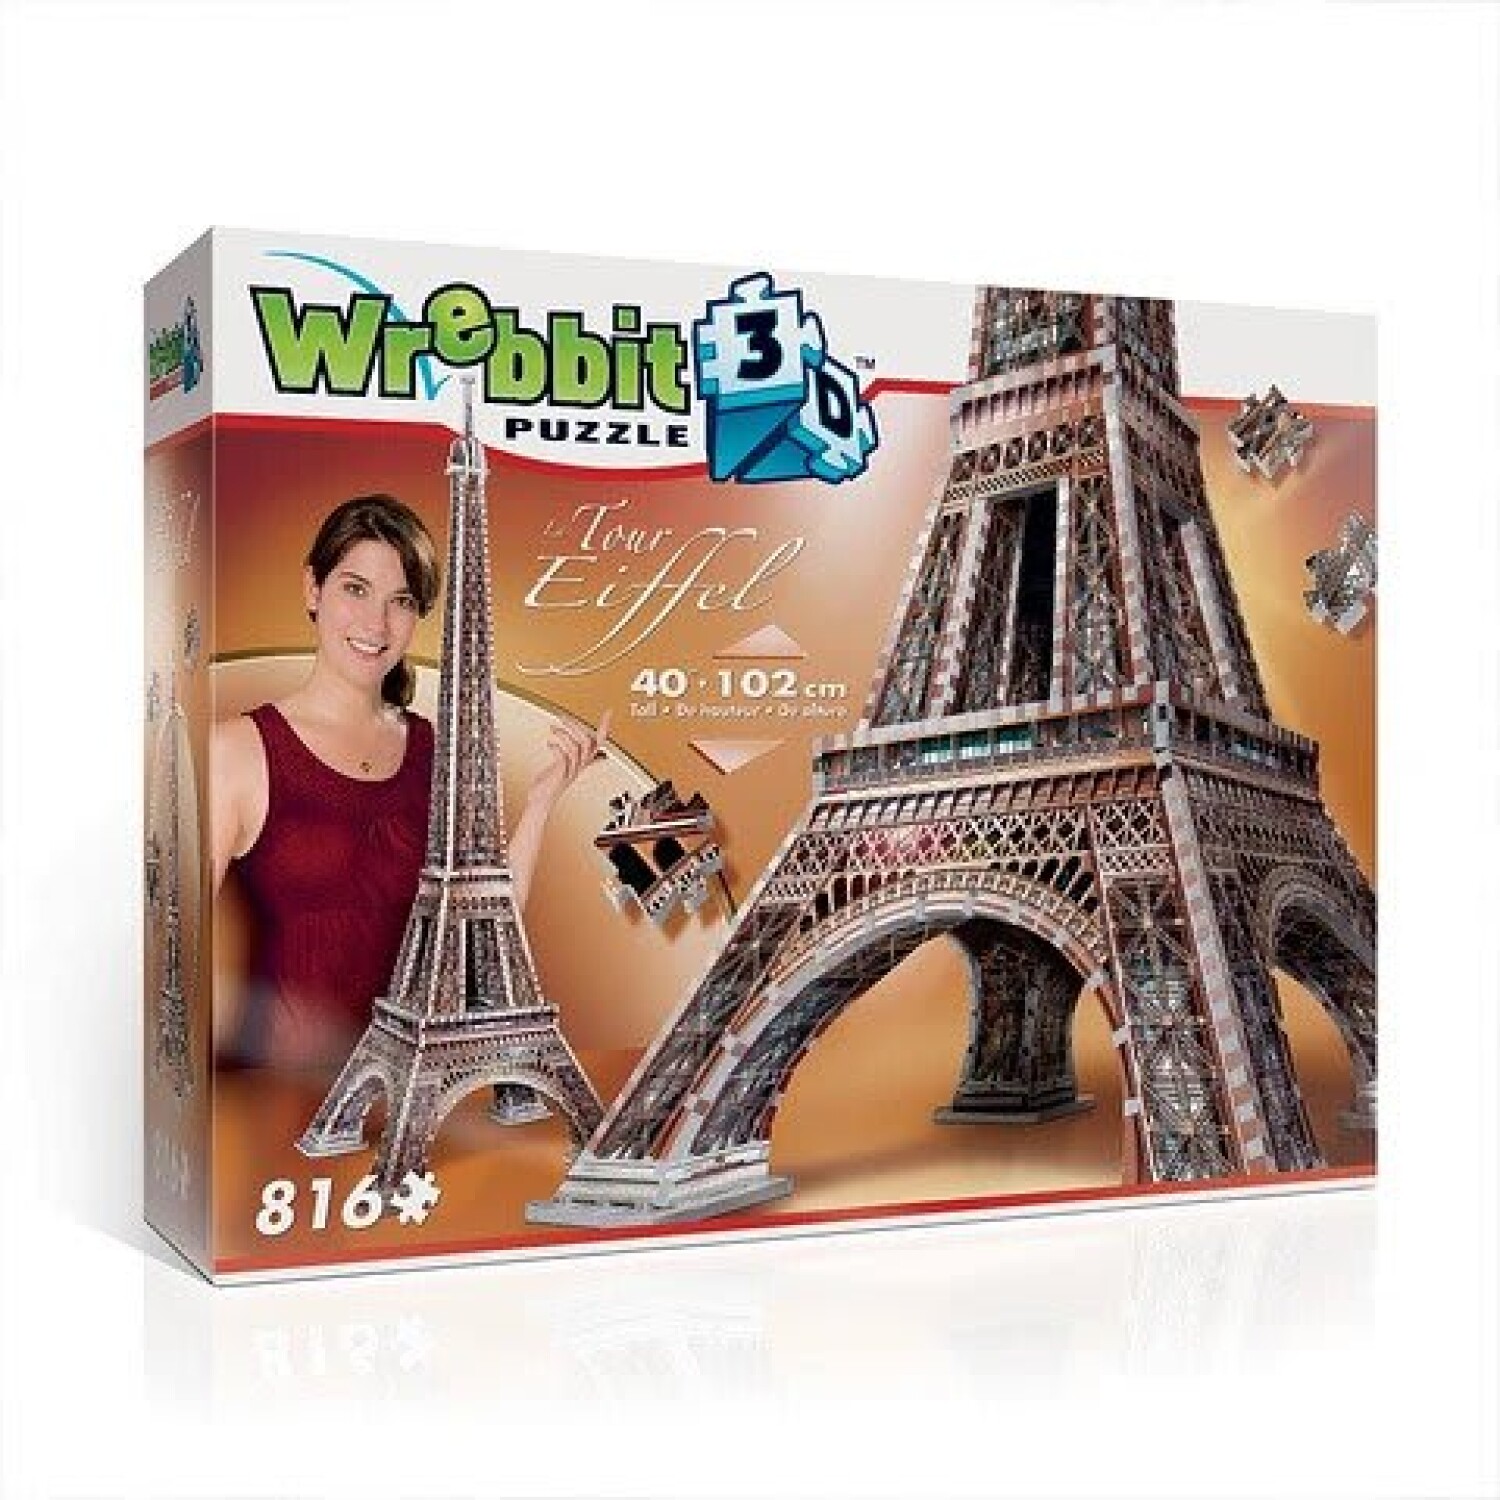 Groseramente No puedo leer ni escribir Asesor Puzzle Wrebbit 3D Torre Eiffel 816 Piezas - 001 — Universo Binario